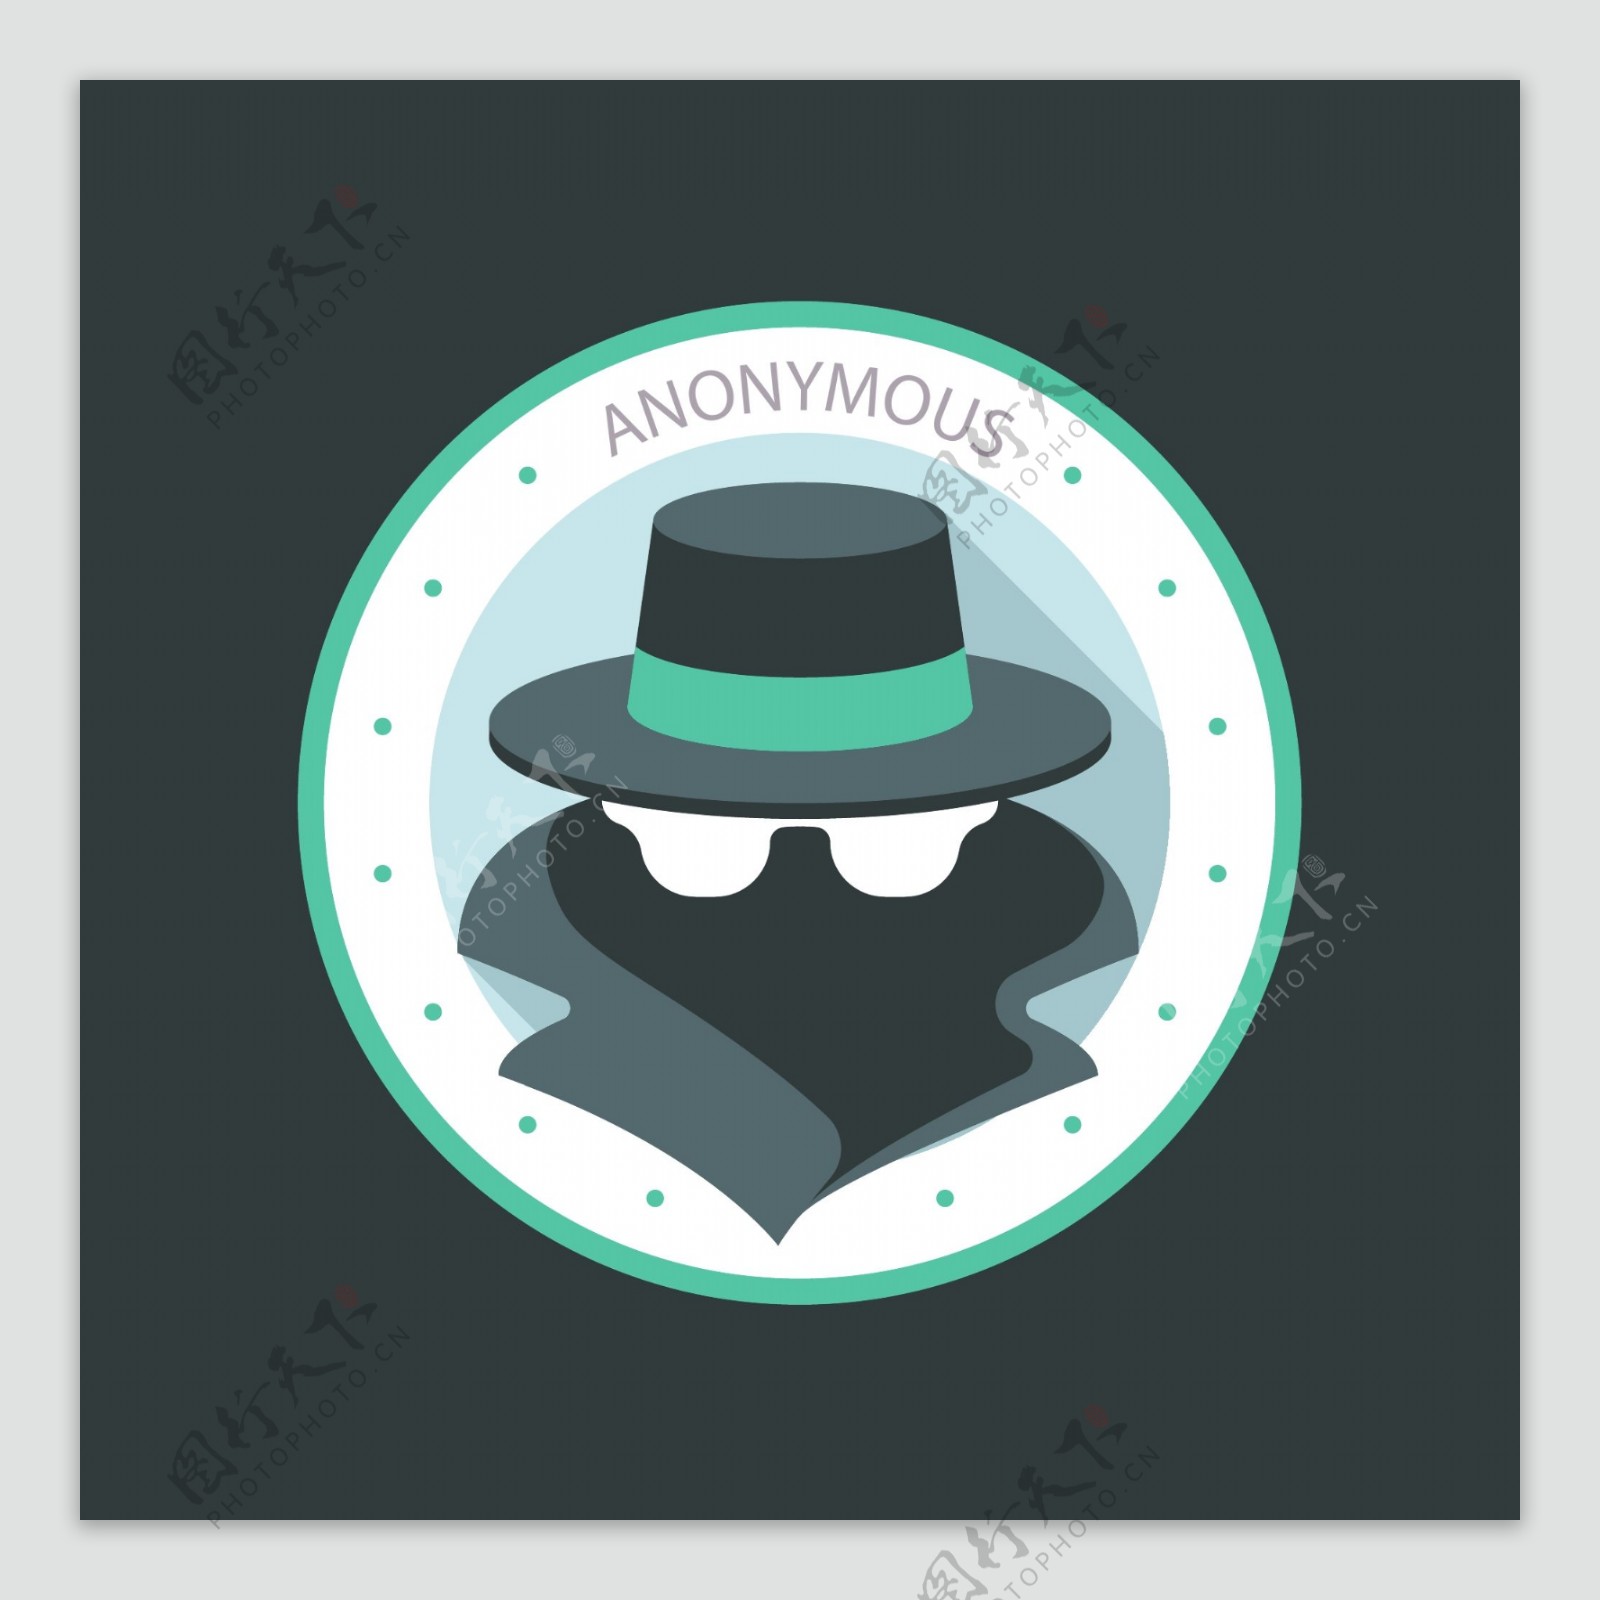 扁平化匿名标志logo模板